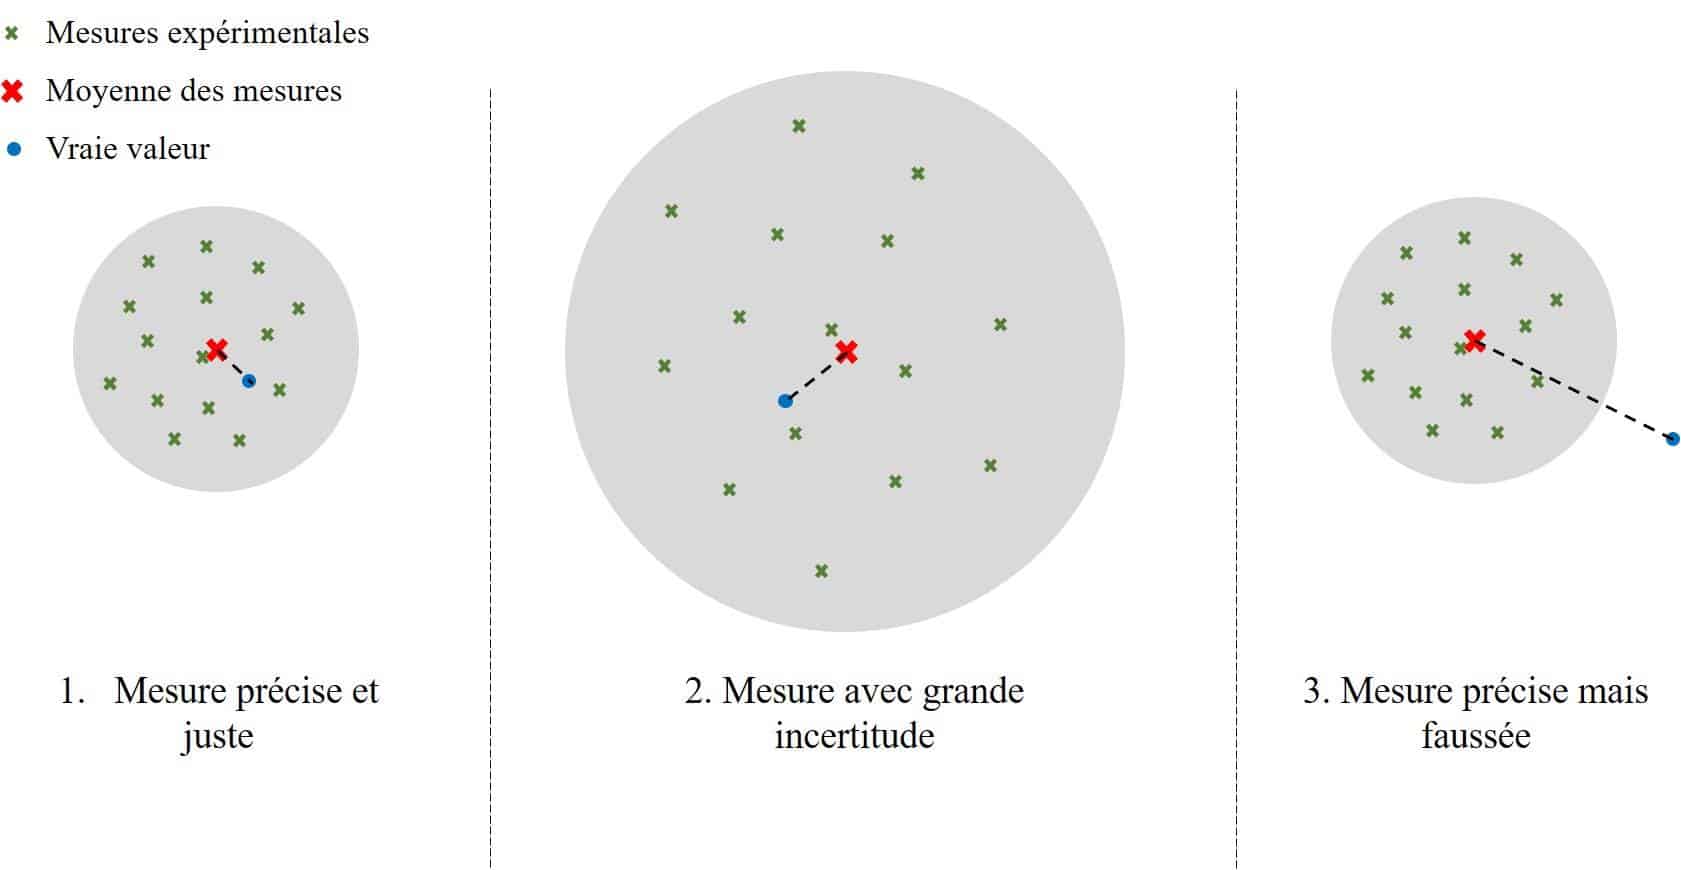 Schéma en trois parties. 
Légende : croix verte = mesures expérimentales ; croix rouge = moyenne des mesures ; point bleu = vraie valeur.
À gauche il y a un cercle grisé avec à l'intérieur une quinzaine de croix vertes. Une croix rouge est au centre et un point bleu est juste à côté de la croix rouge. Toutes les croix et points sont donc dans le cercle. Sous le cercle il y a le texte « Mesure précise et juste ».
Au milieu il y a un cercle gris deux fois plus grand que celui de gauche. Dessous il y a le texte « Mesure avec grande incertitude ».
À droite il y un cercle grisé de la même taille que celui de gauche. Tout est identique, à l'exception du point bleu qui est situé à l'extérieur du cercle. Dessous il y a le texte « Mesure précise mais faussée »